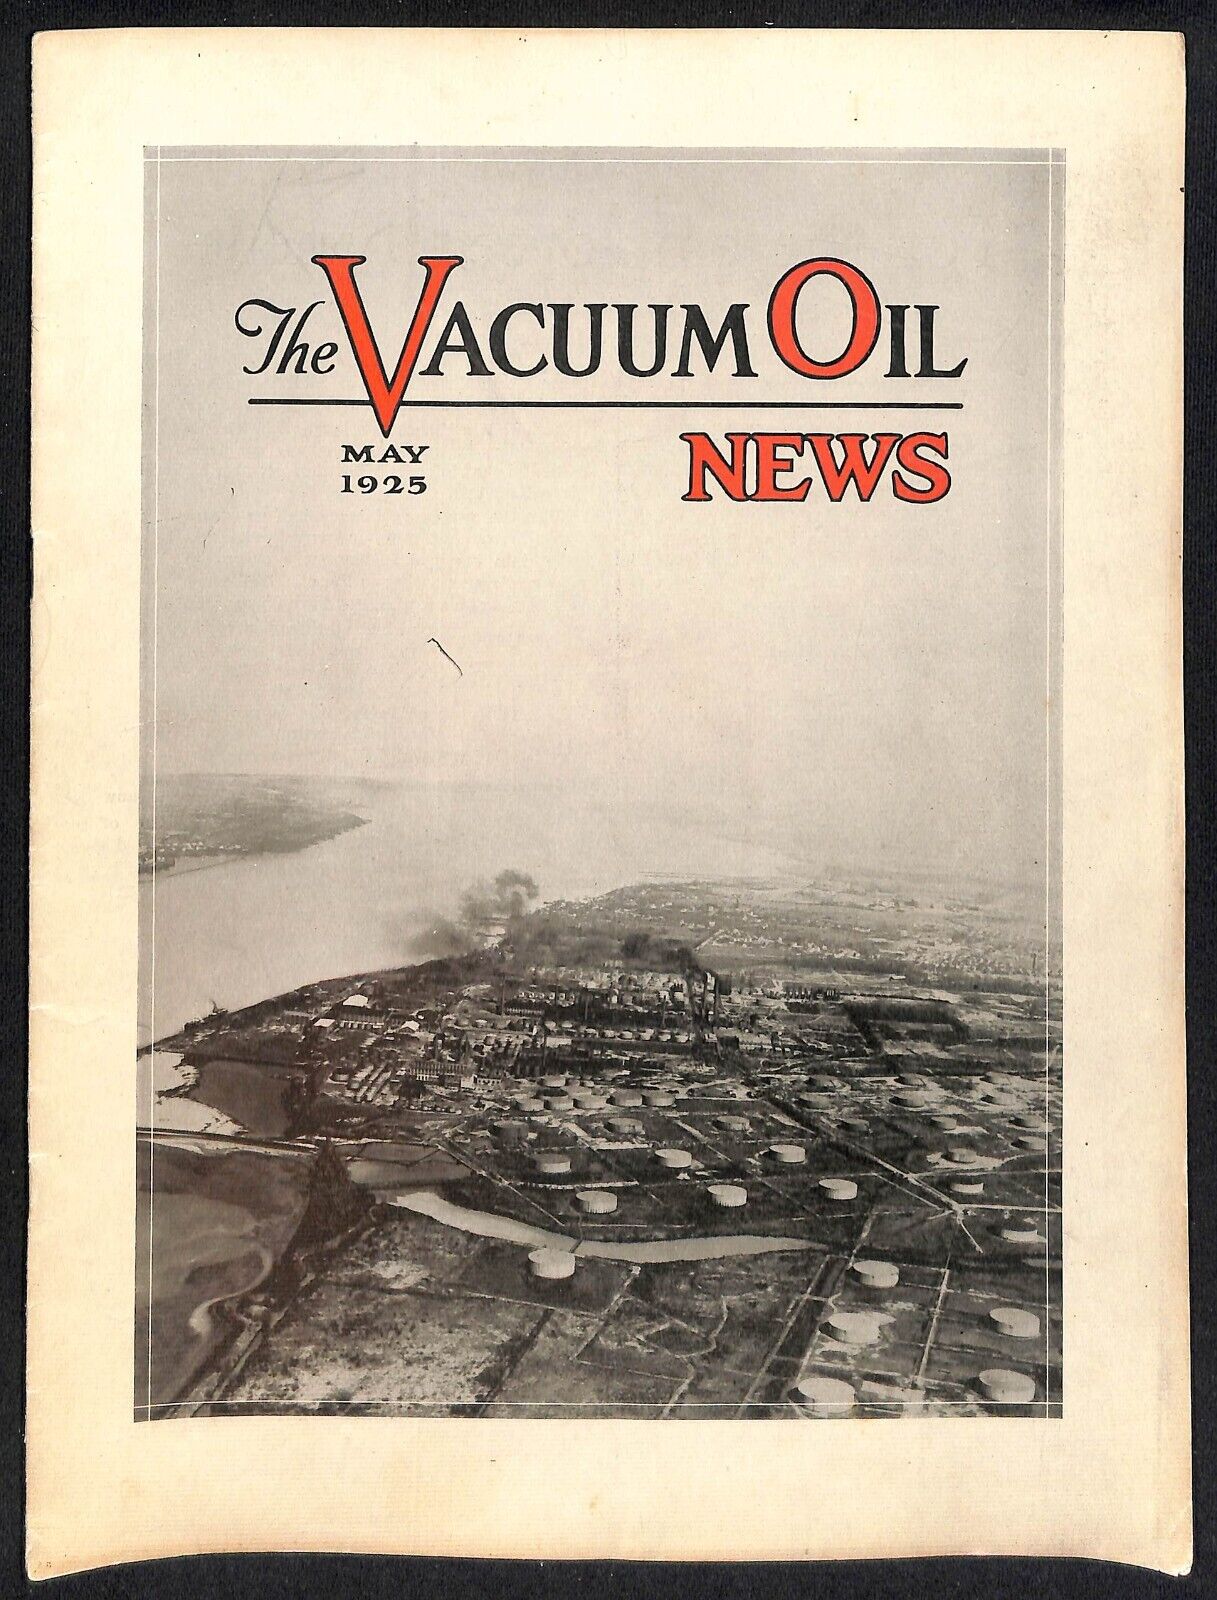 Vacuum Oil News Mobiloil Mobil Oil Gargoyle May 1925 20pp. VGC Scarce